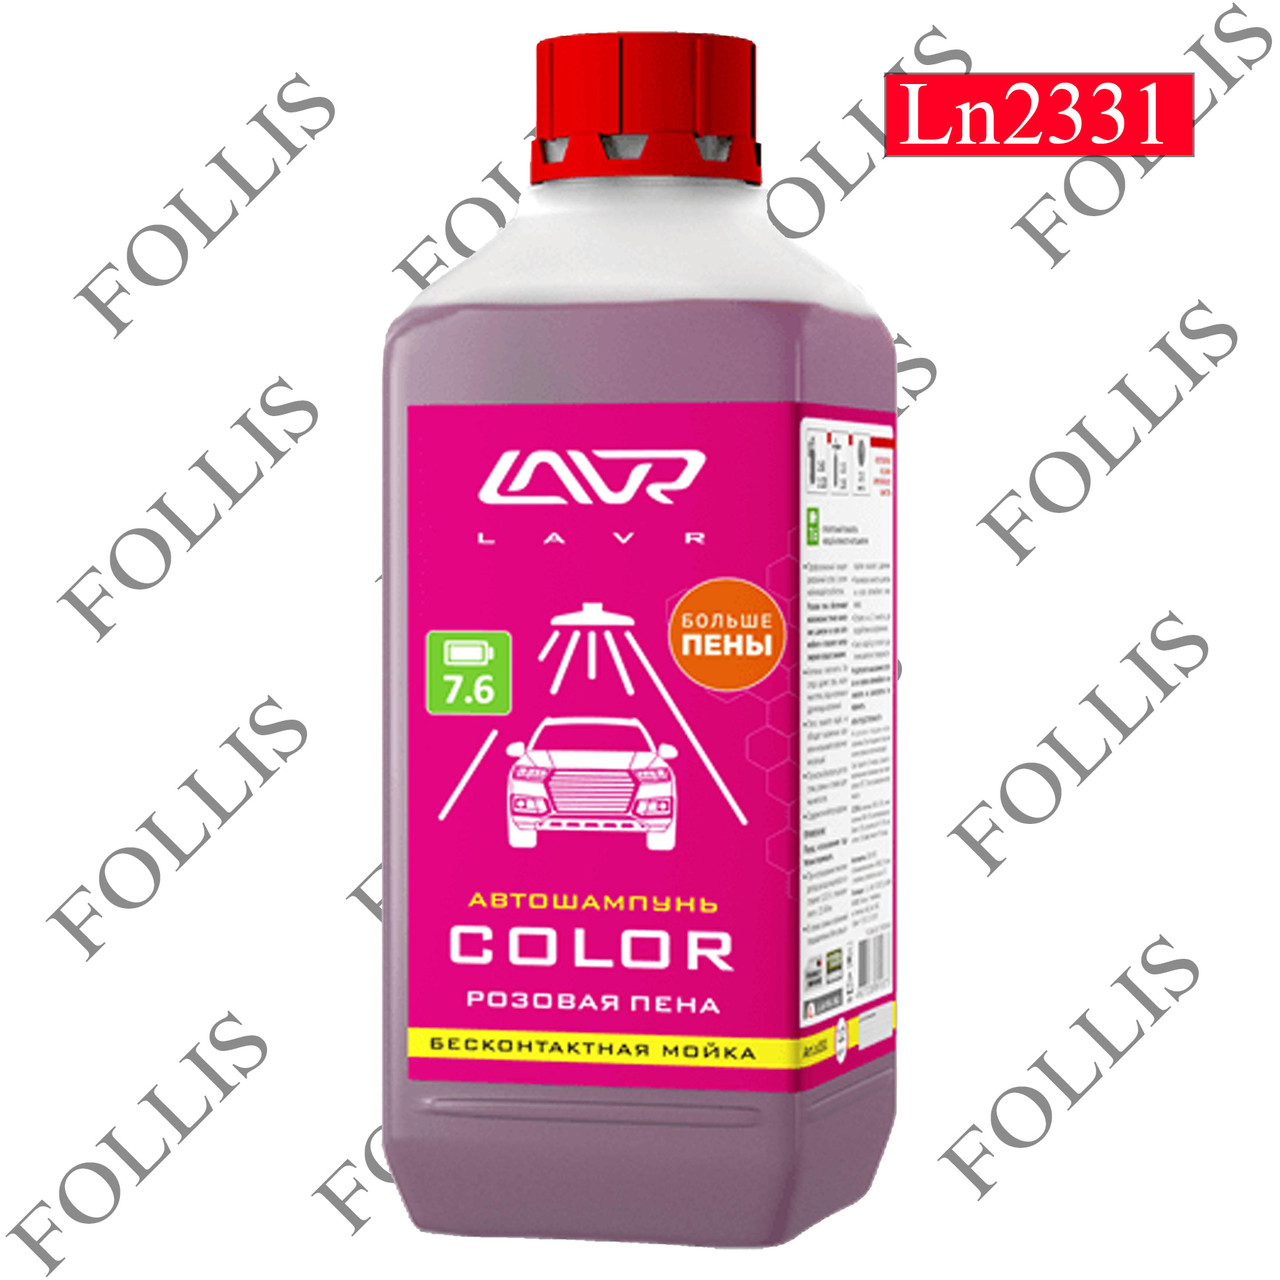 Автошампунь для бесконтактной мойки "COLOR" розовая пена 7.6 (1:7-100) Auto Shampoo COLOR 1 л